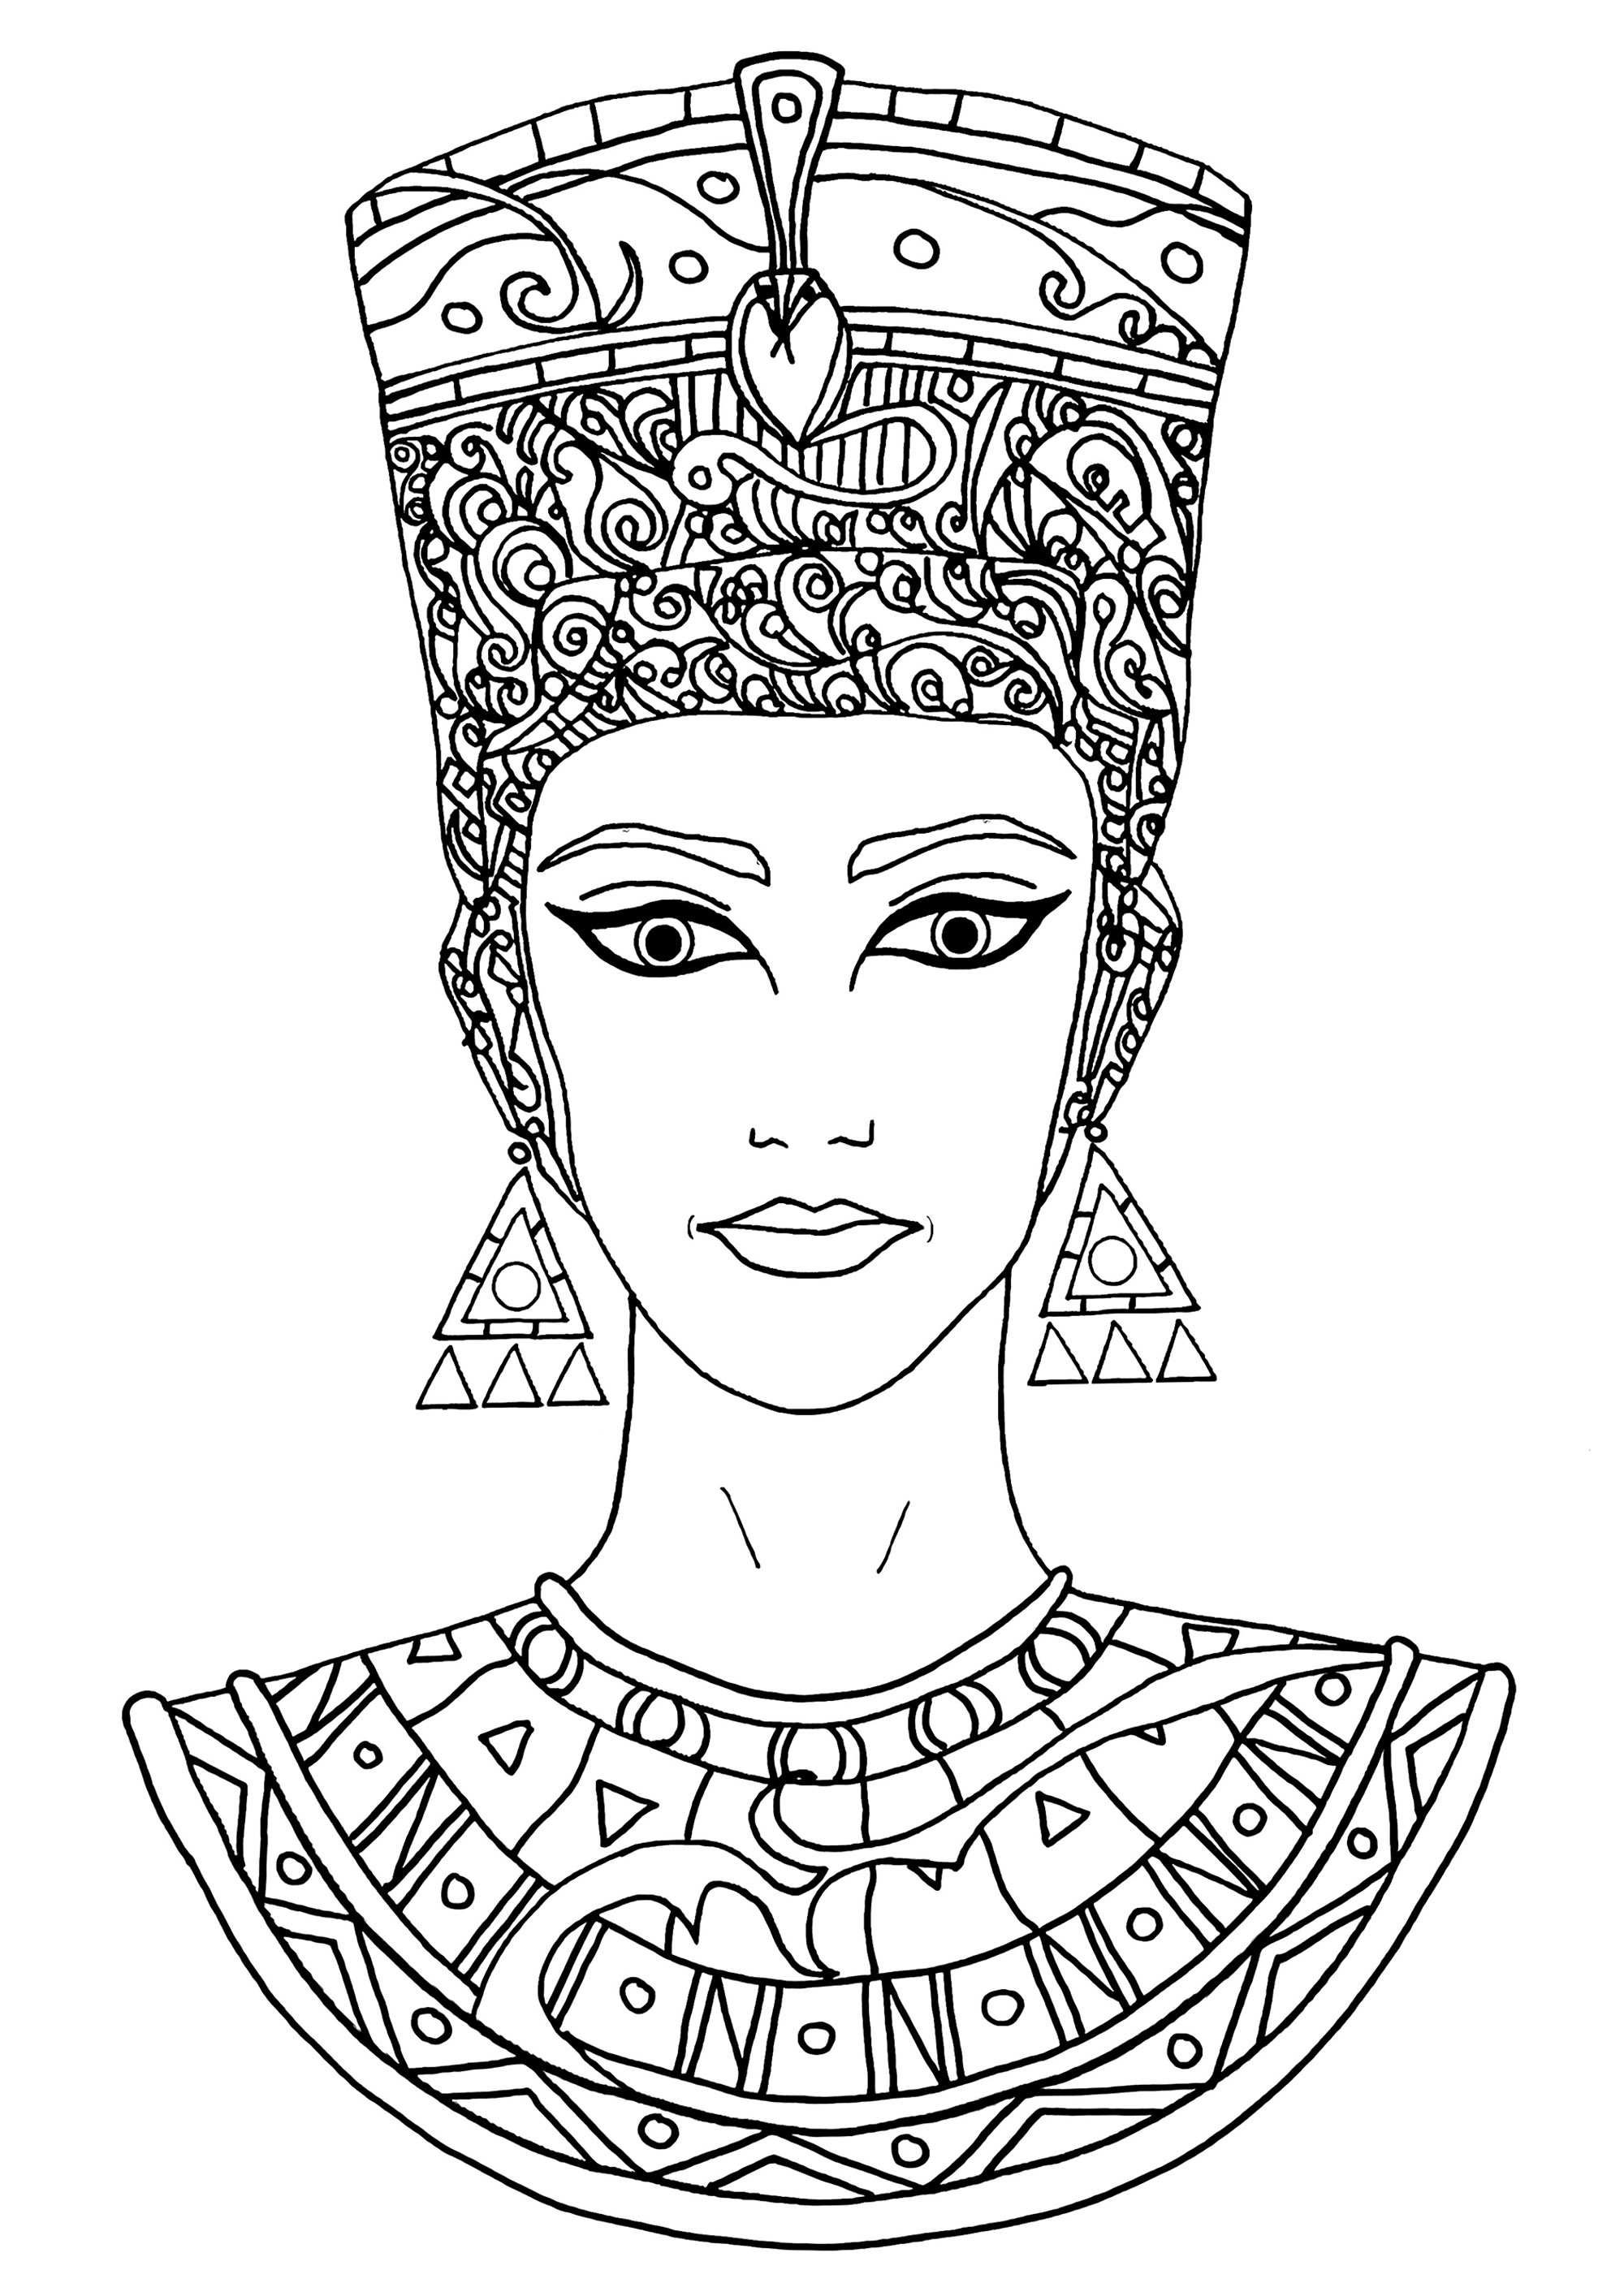 Joli dessin de Nefertiti à colorier. Nefertiti était une reine très importante, puissante et respectée en Égypte il y a très longtemps. Elle était la femme du roi Akhenaton et ensemble, ils ont régné sur le pays et contribué à changer les croyances religieuses de l'Égypte. Nefertiti était très belle et on a retrouvé une statue d'elle qui est très célèbre aujourd'hui.